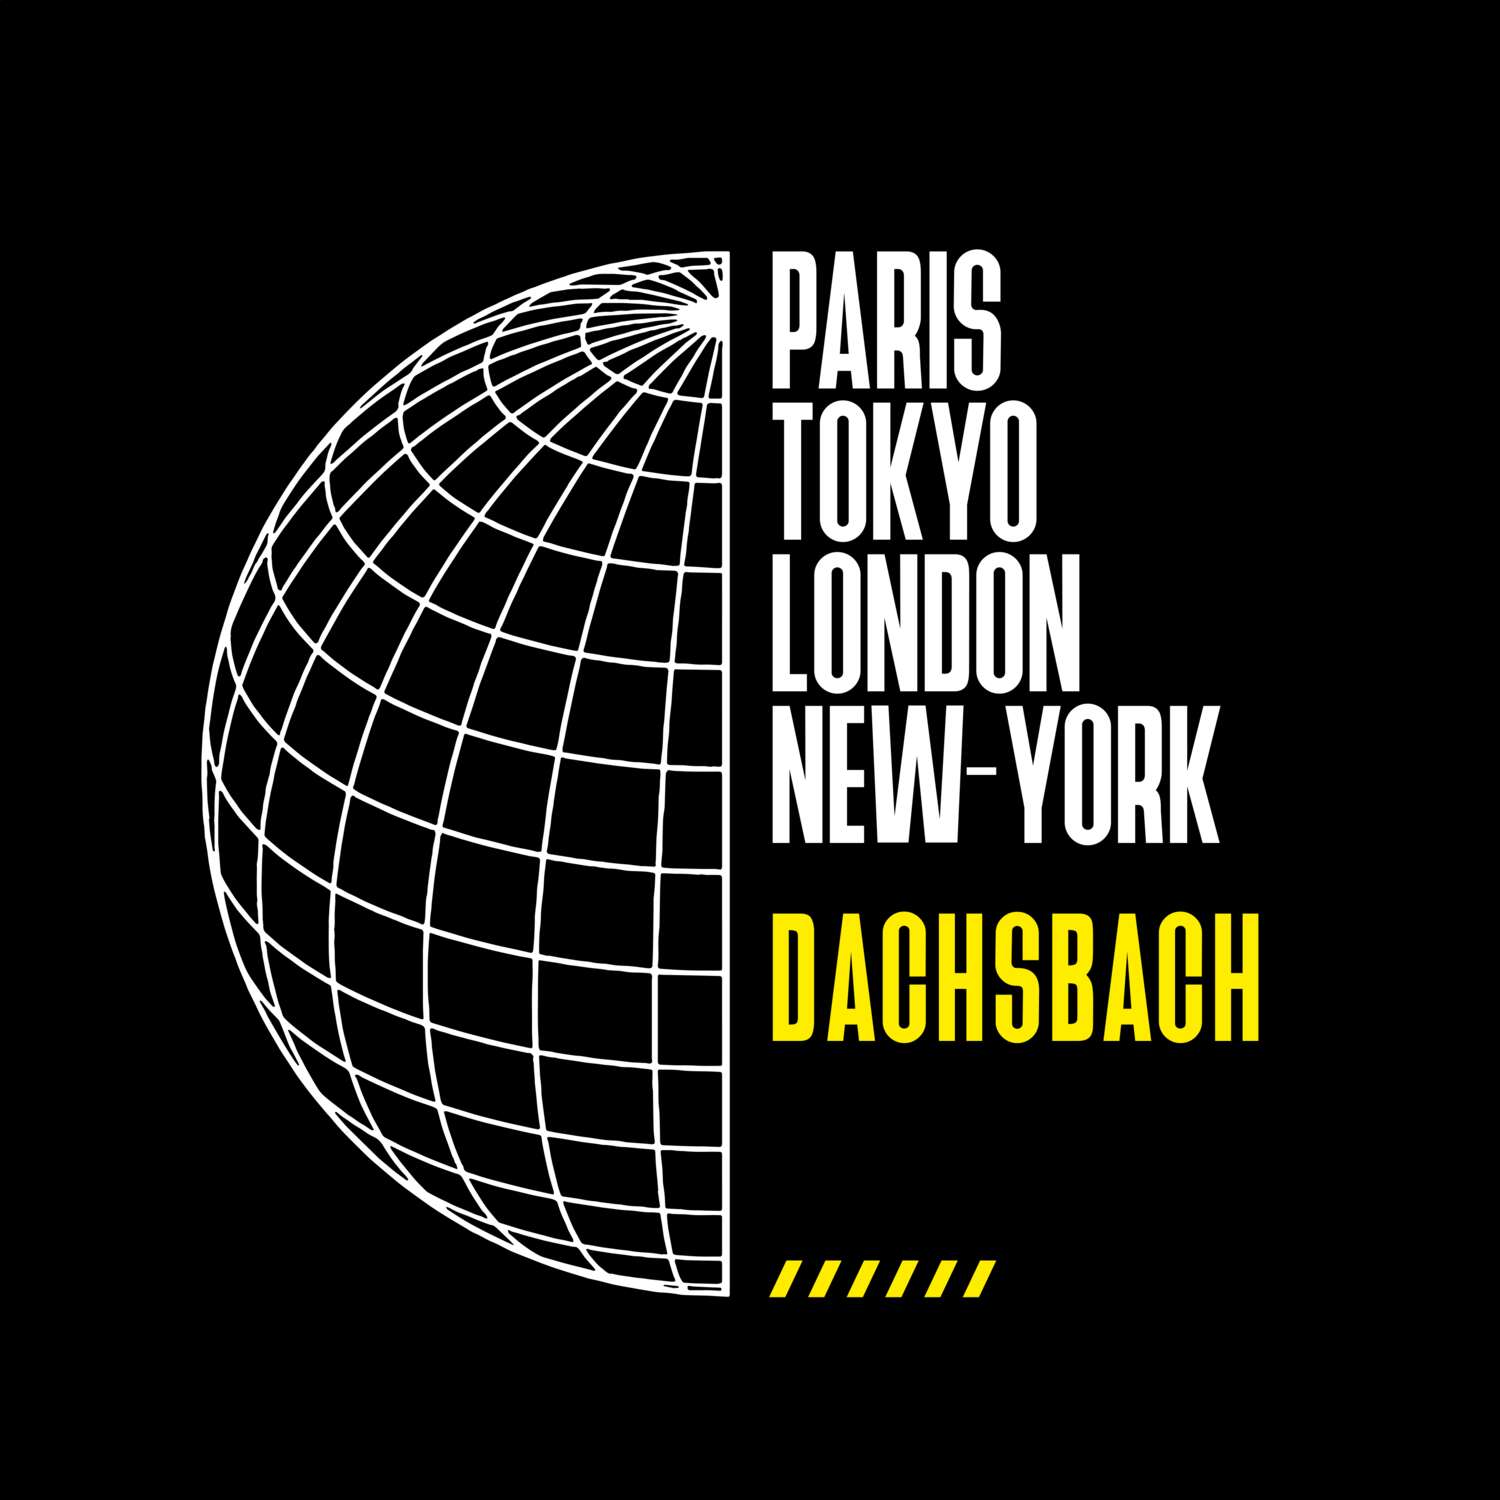 Dachsbach T-Shirt »Paris Tokyo London«